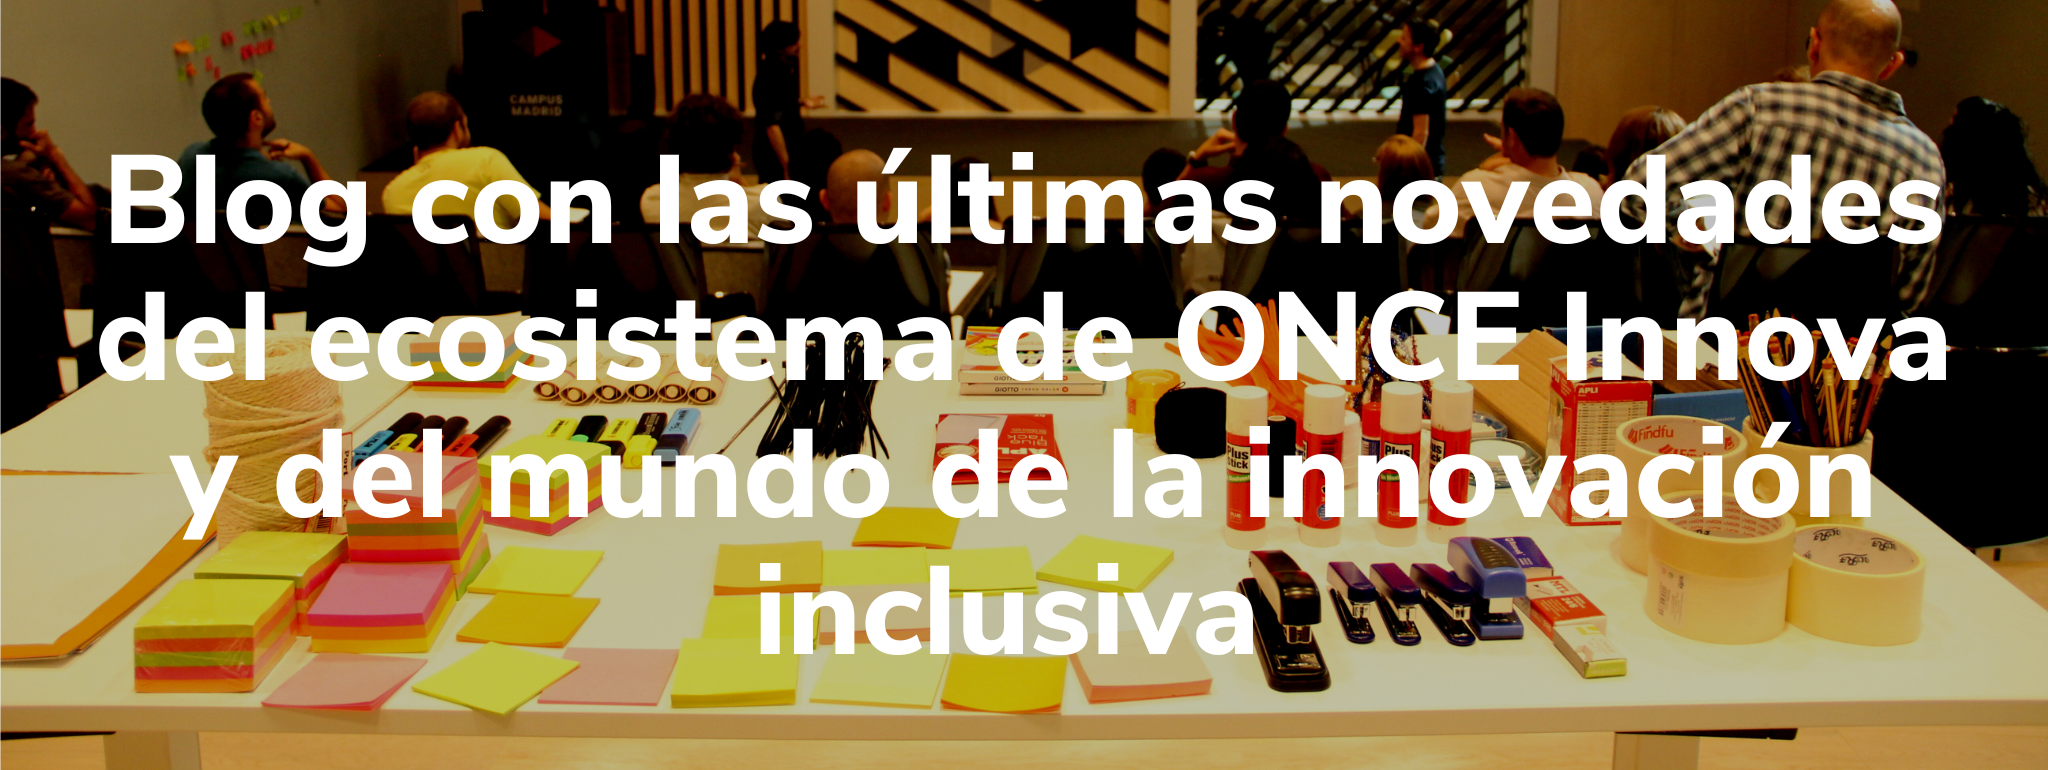 Blog con las últimas novedades del ecosistema de ONCE Innova y del mundo de la innovación inclusiva